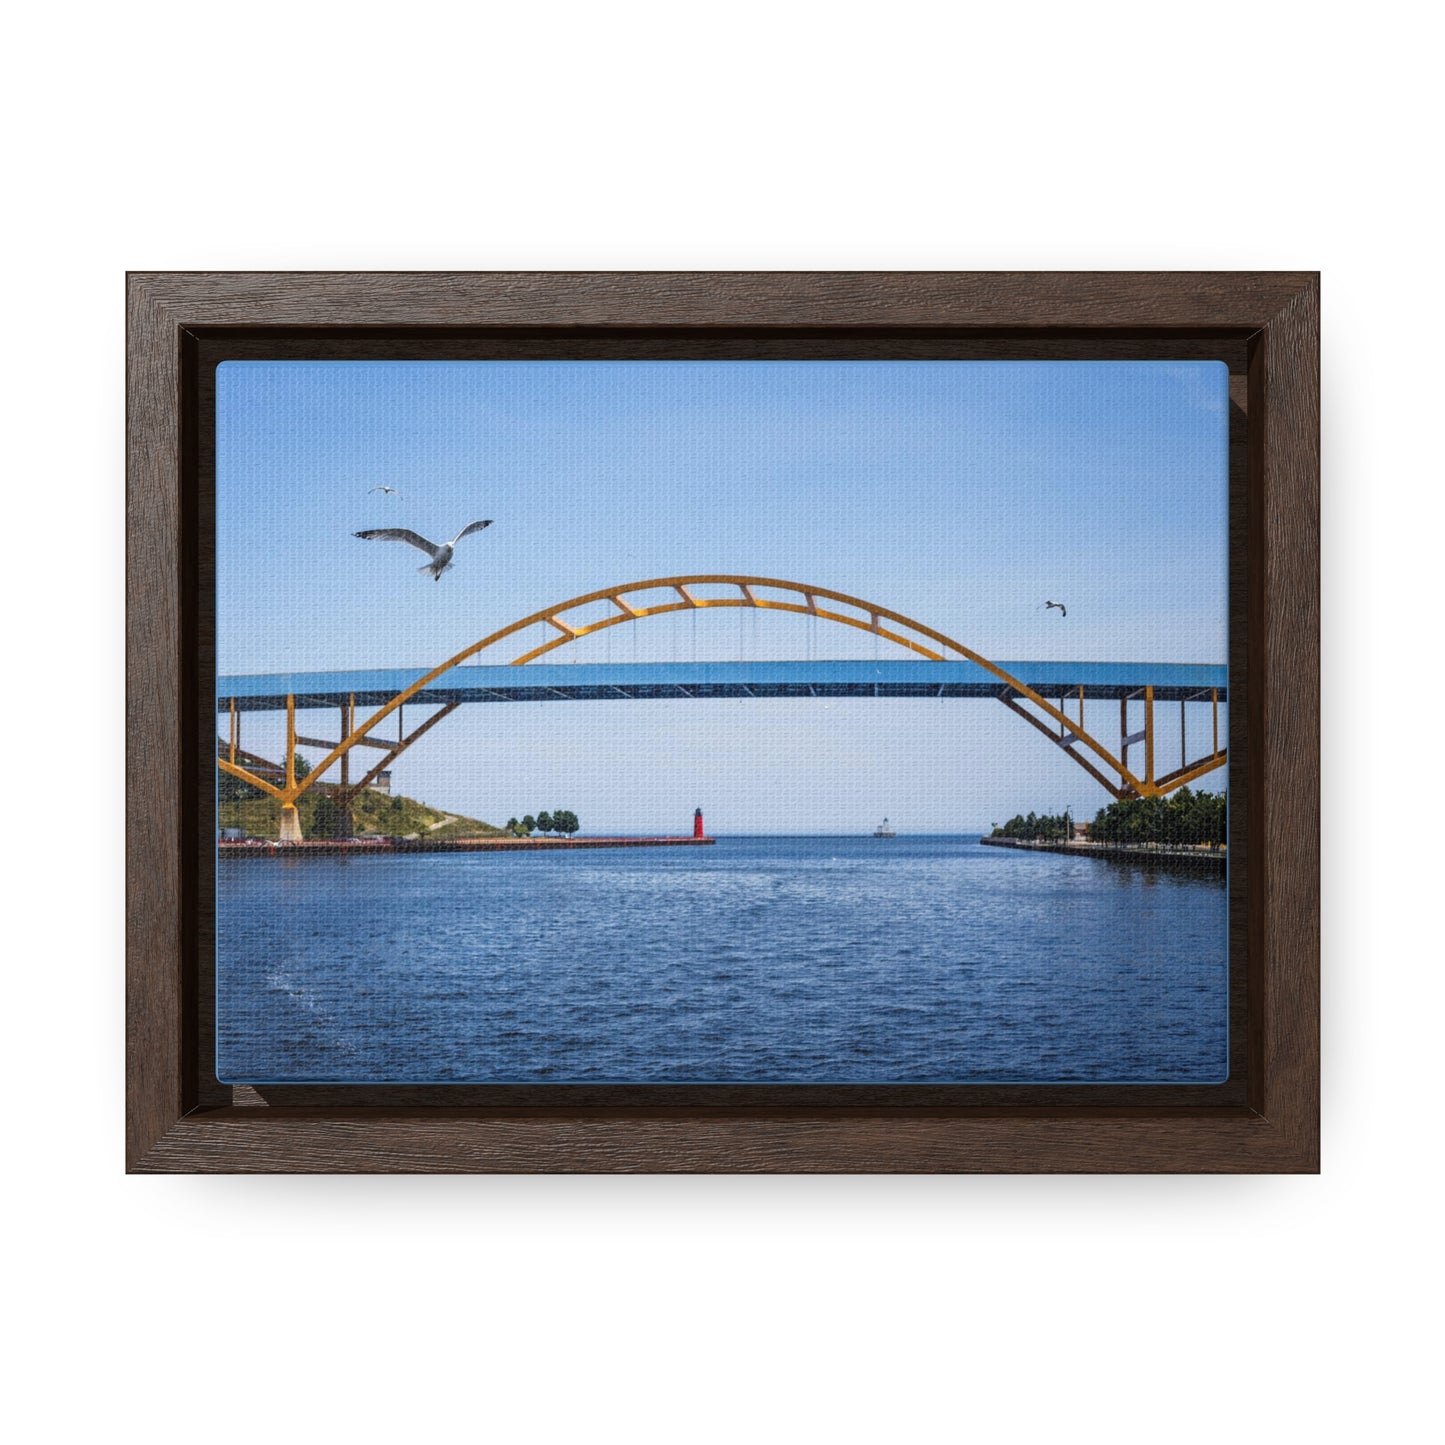 Milwaukee, Wisconsin's Hoan Bridge et mouettes, photographie encadrée sur toile